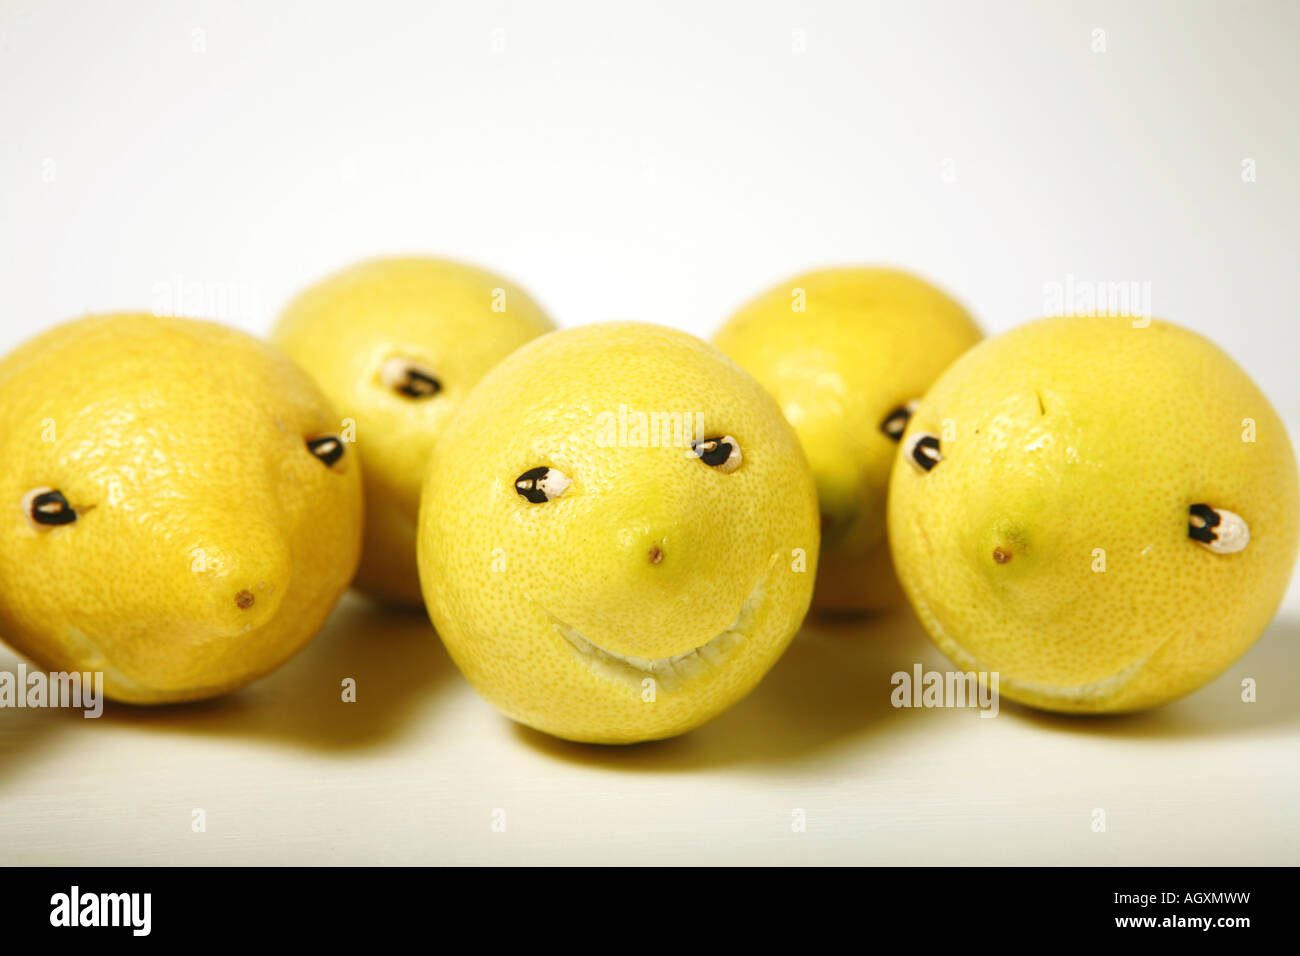 Funny lemons on white background. Stock Photo